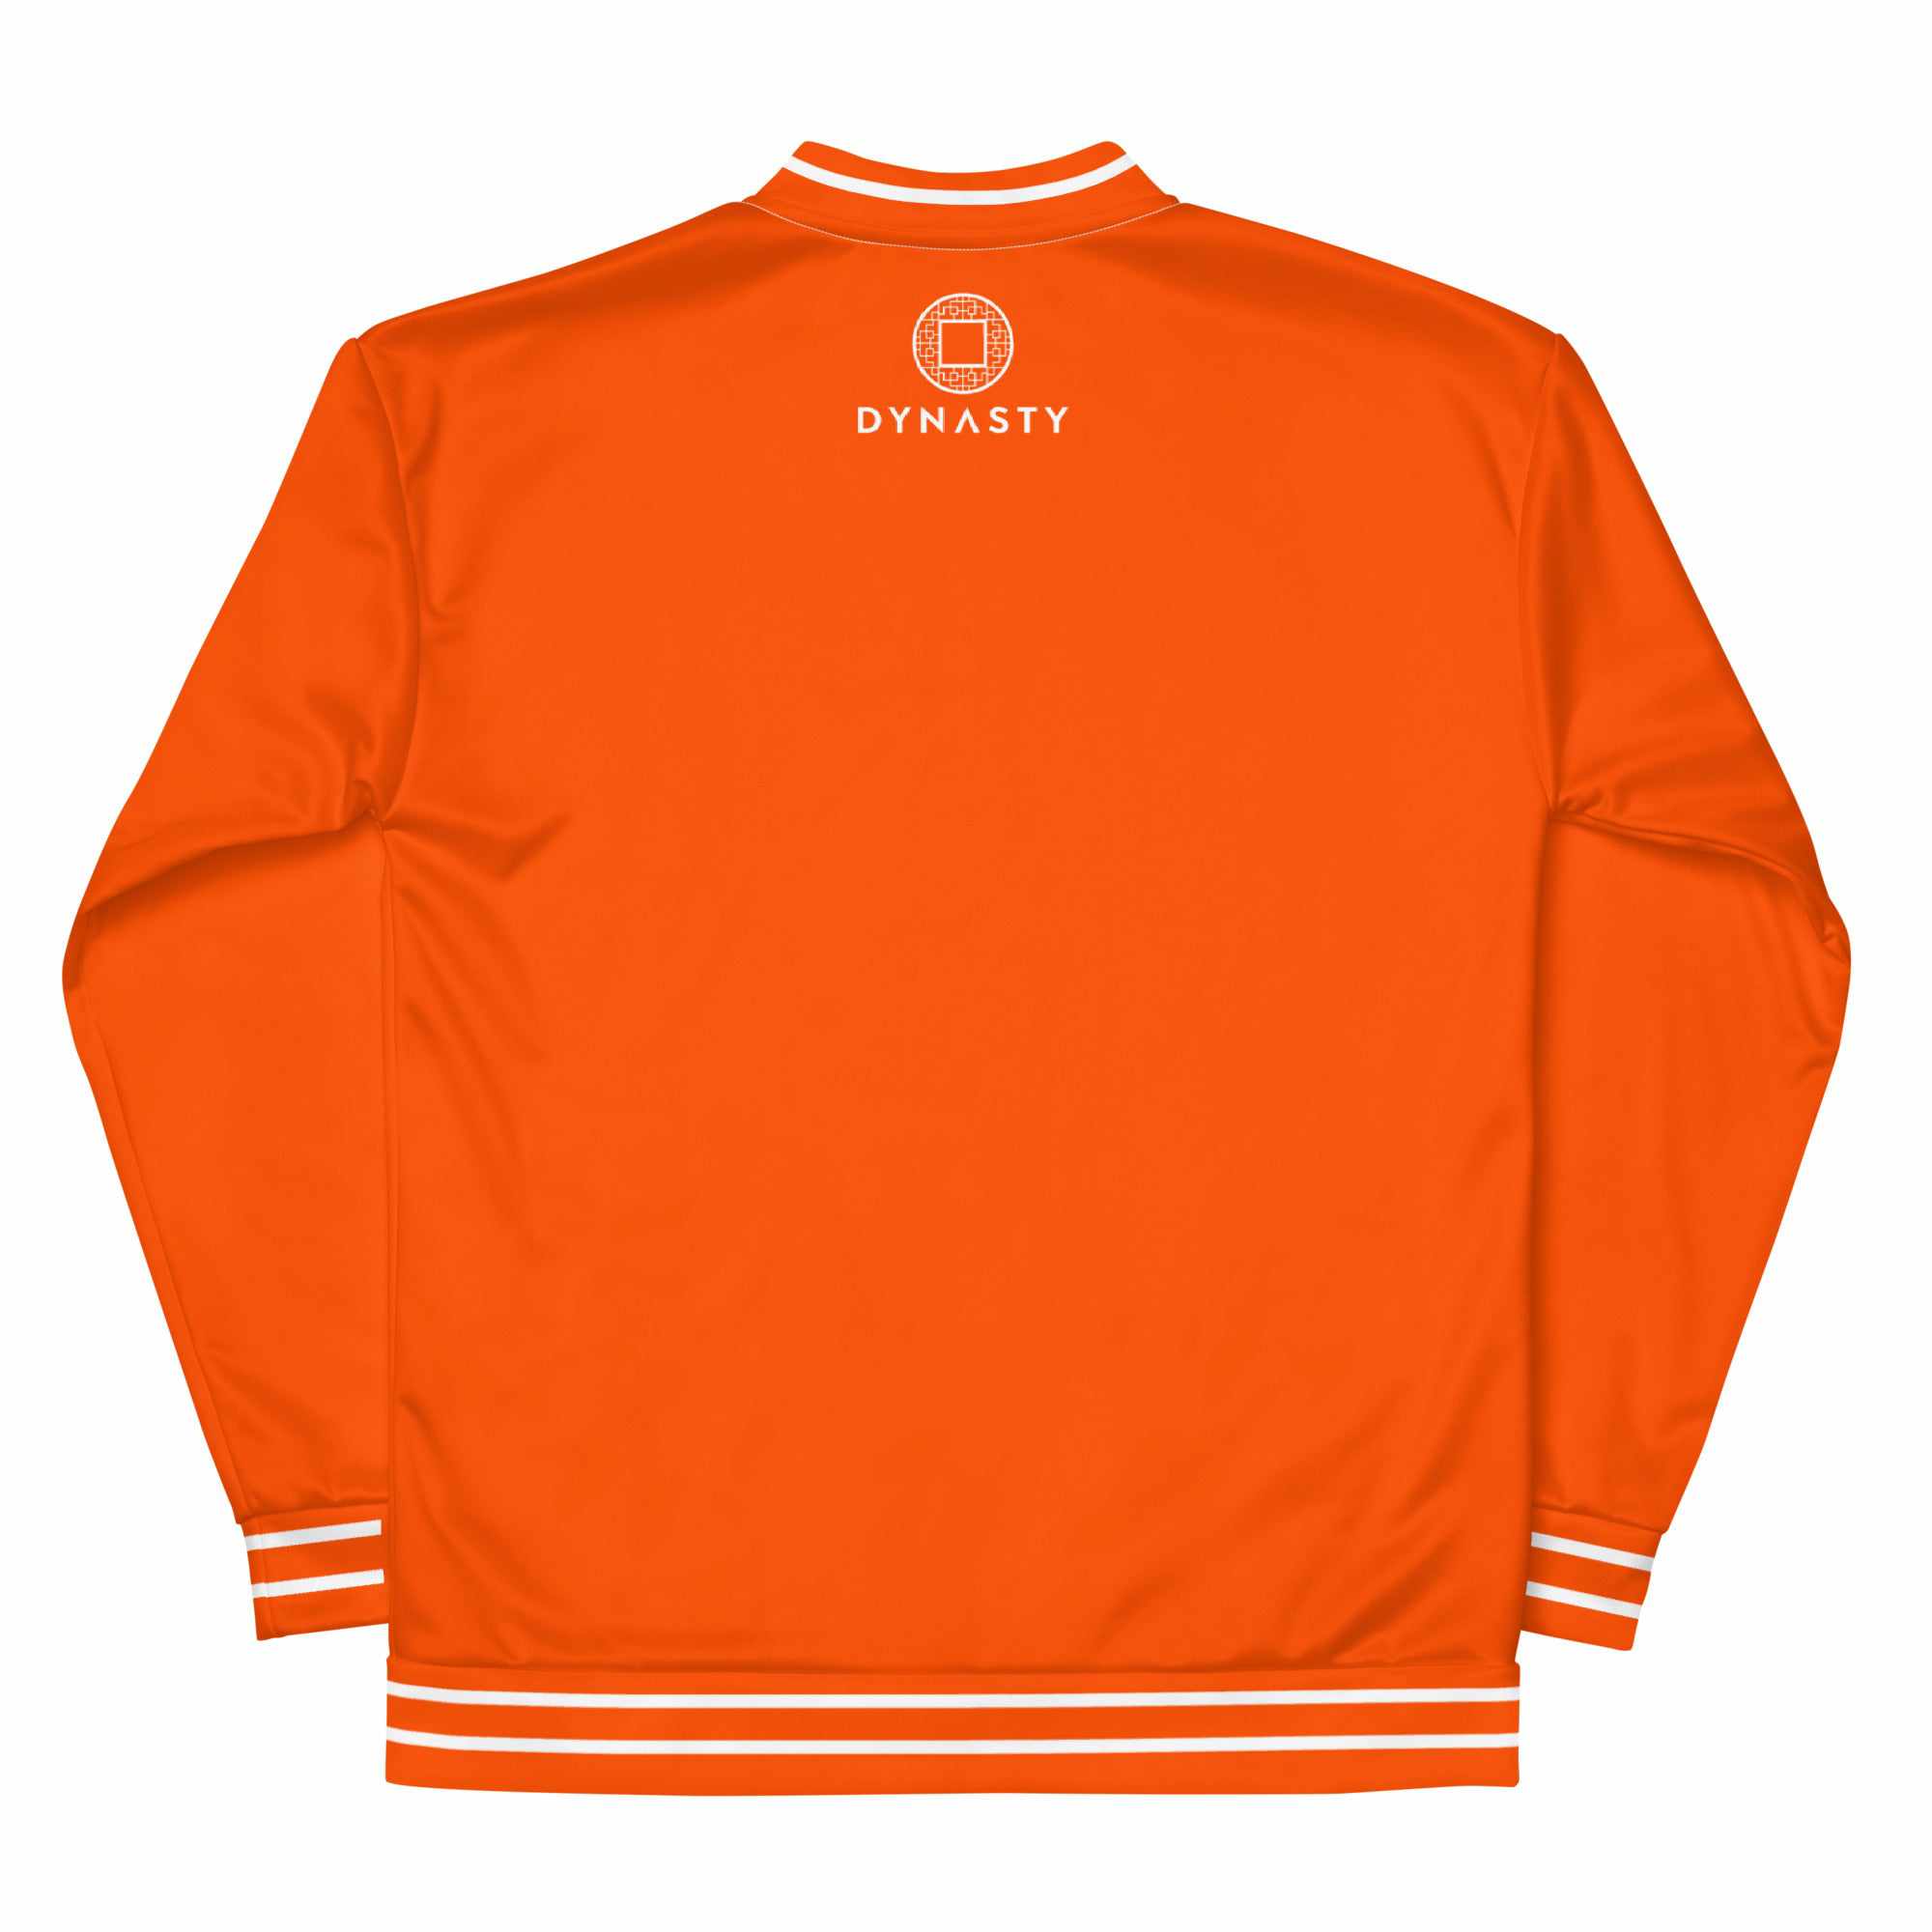 少林功夫 Shaolin Kung Fu Bomber Jacket (Orange)